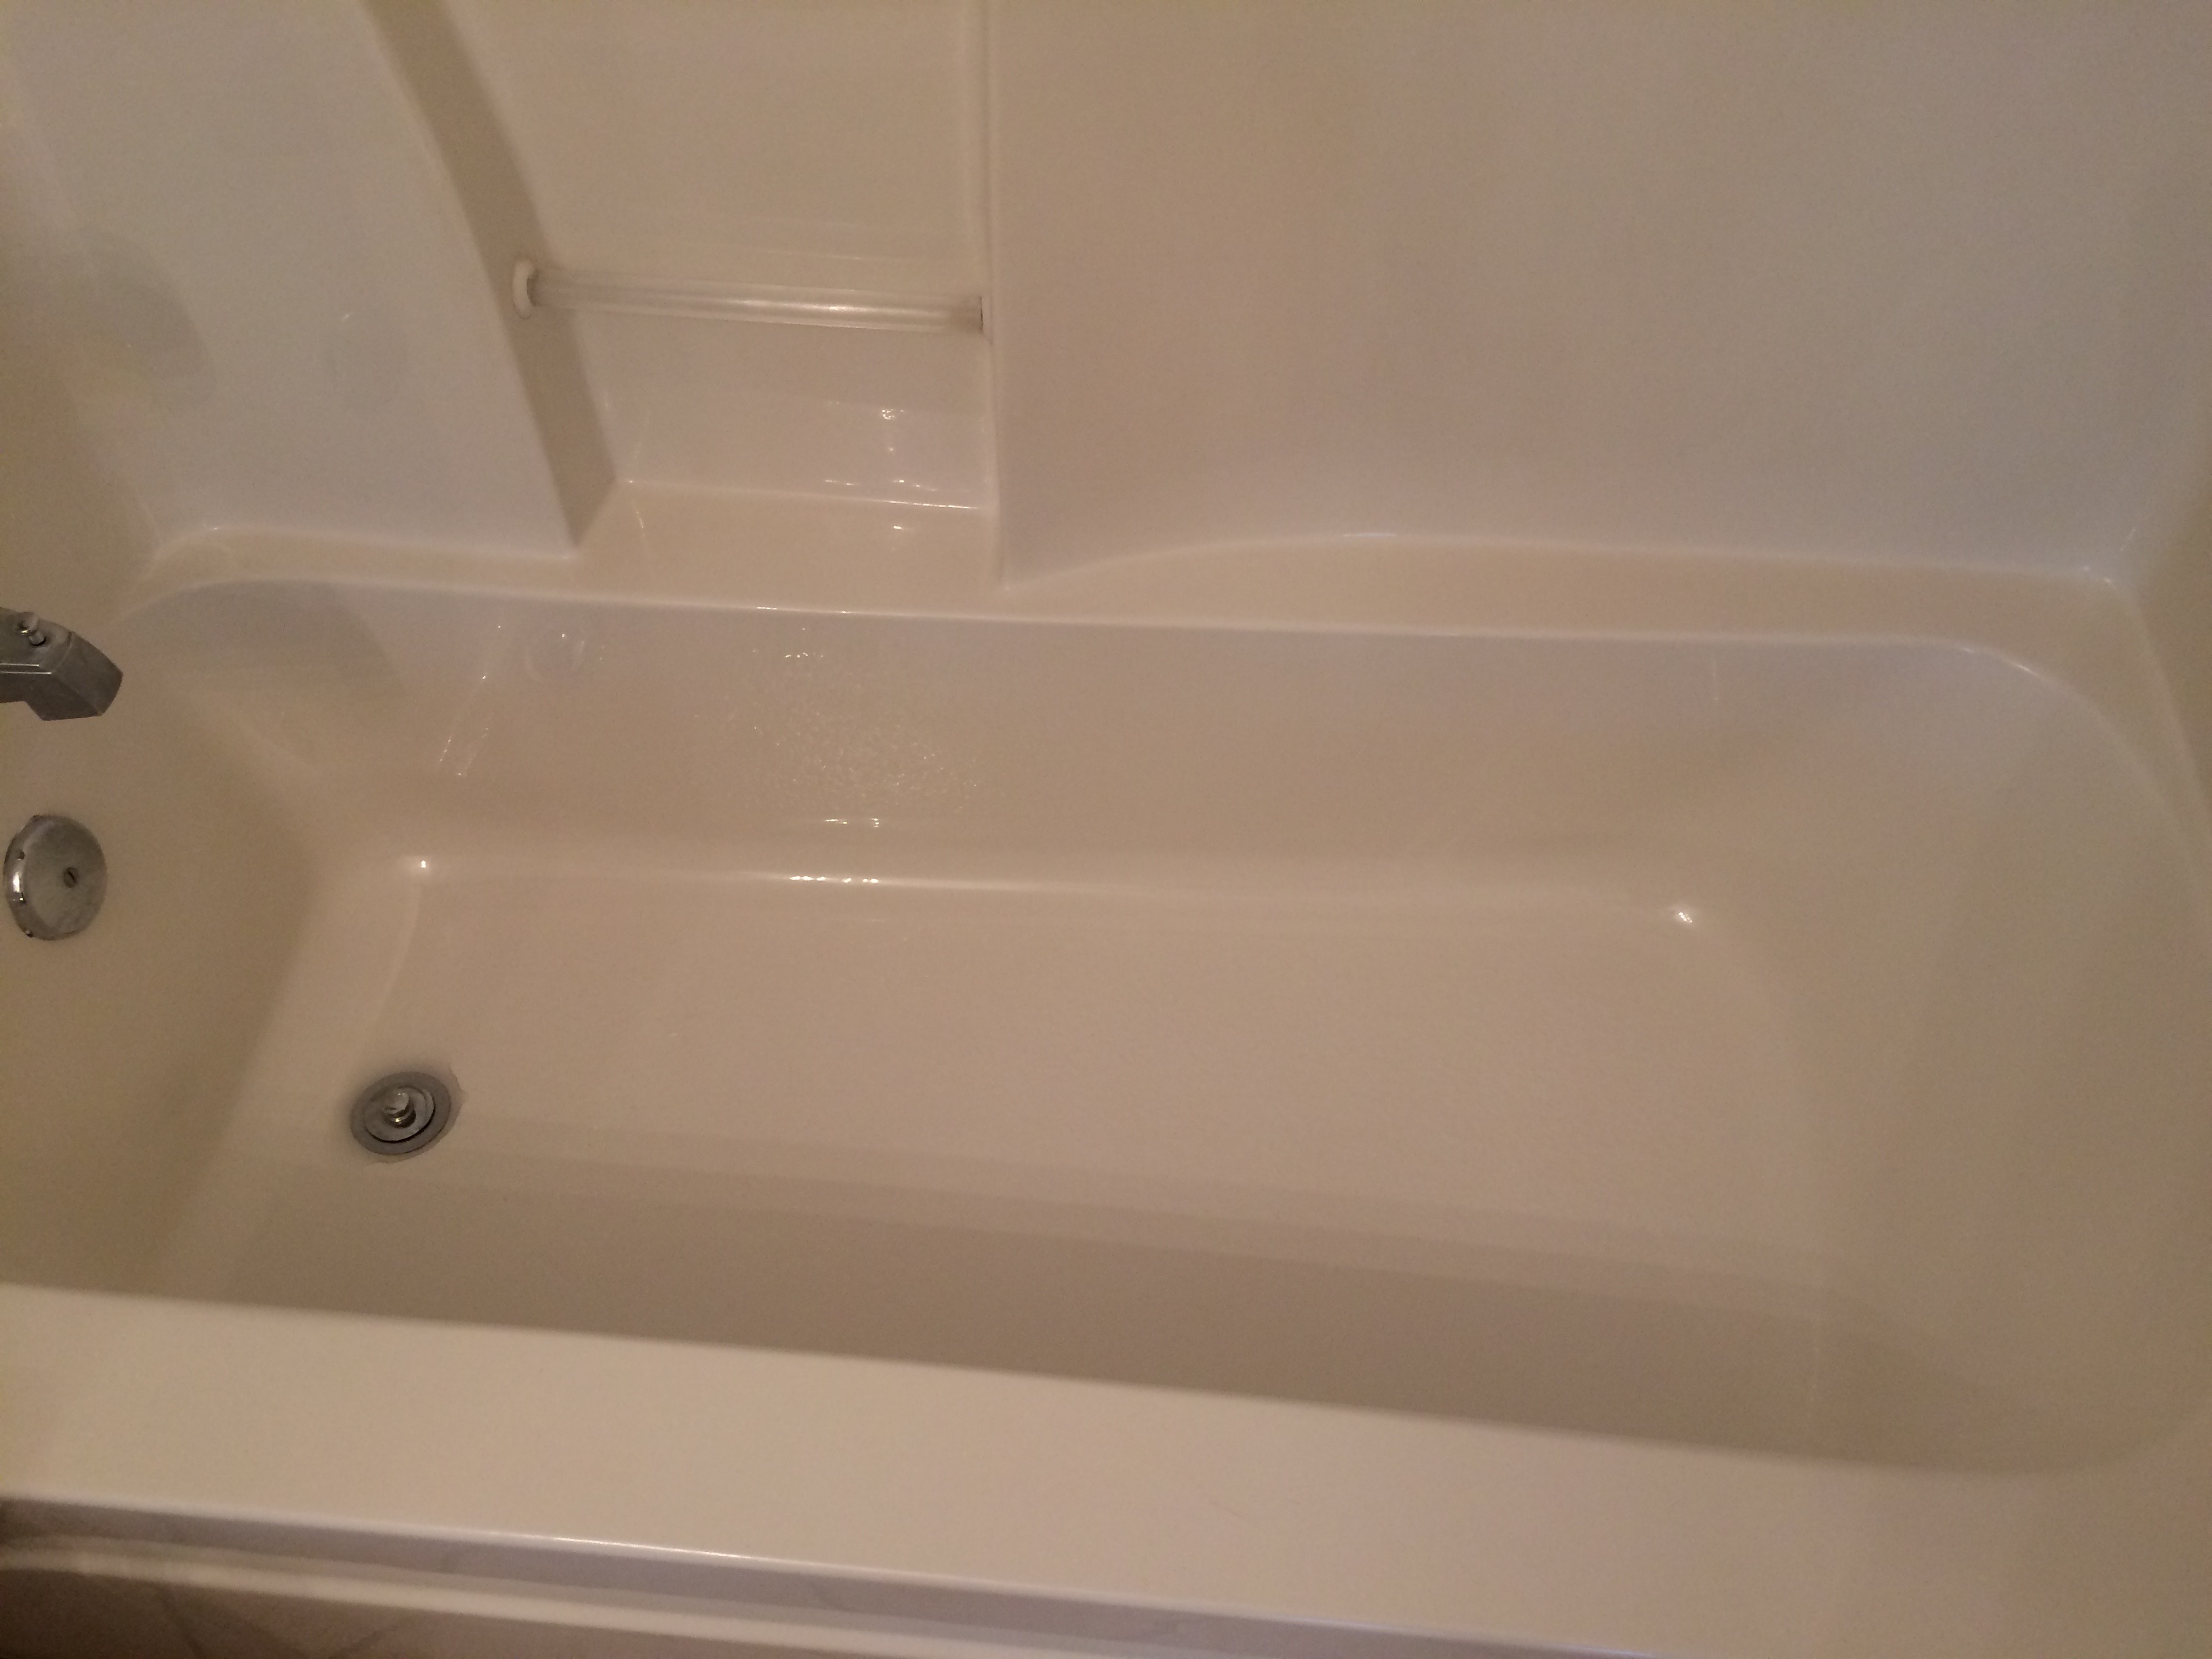 Cleaned like new tub